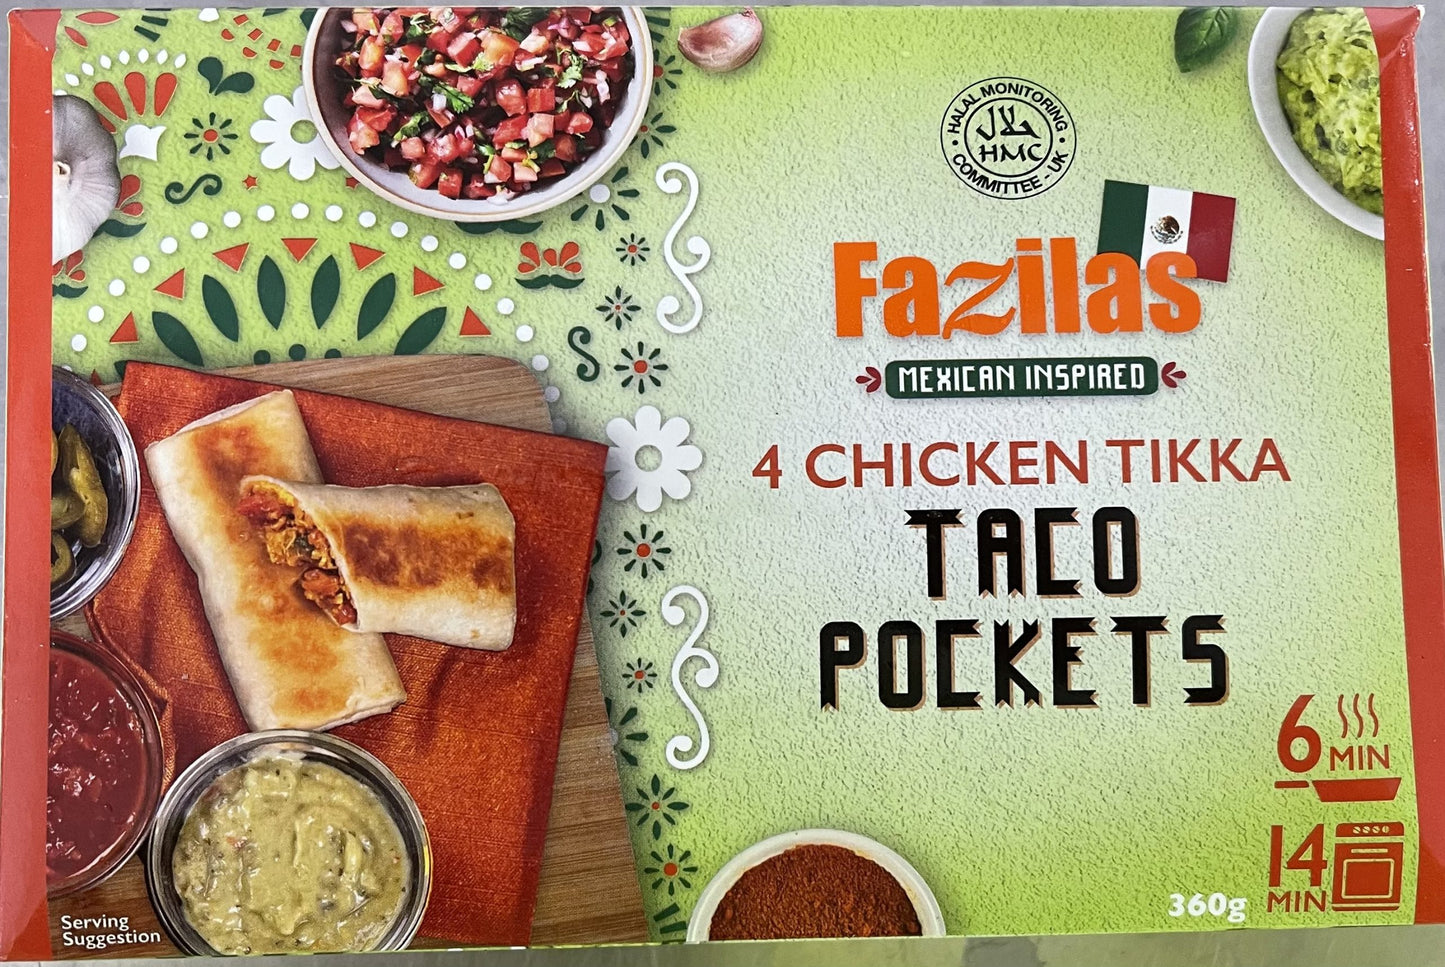 Fazilas 4 Chicken Tikka Taco Pockets 360g